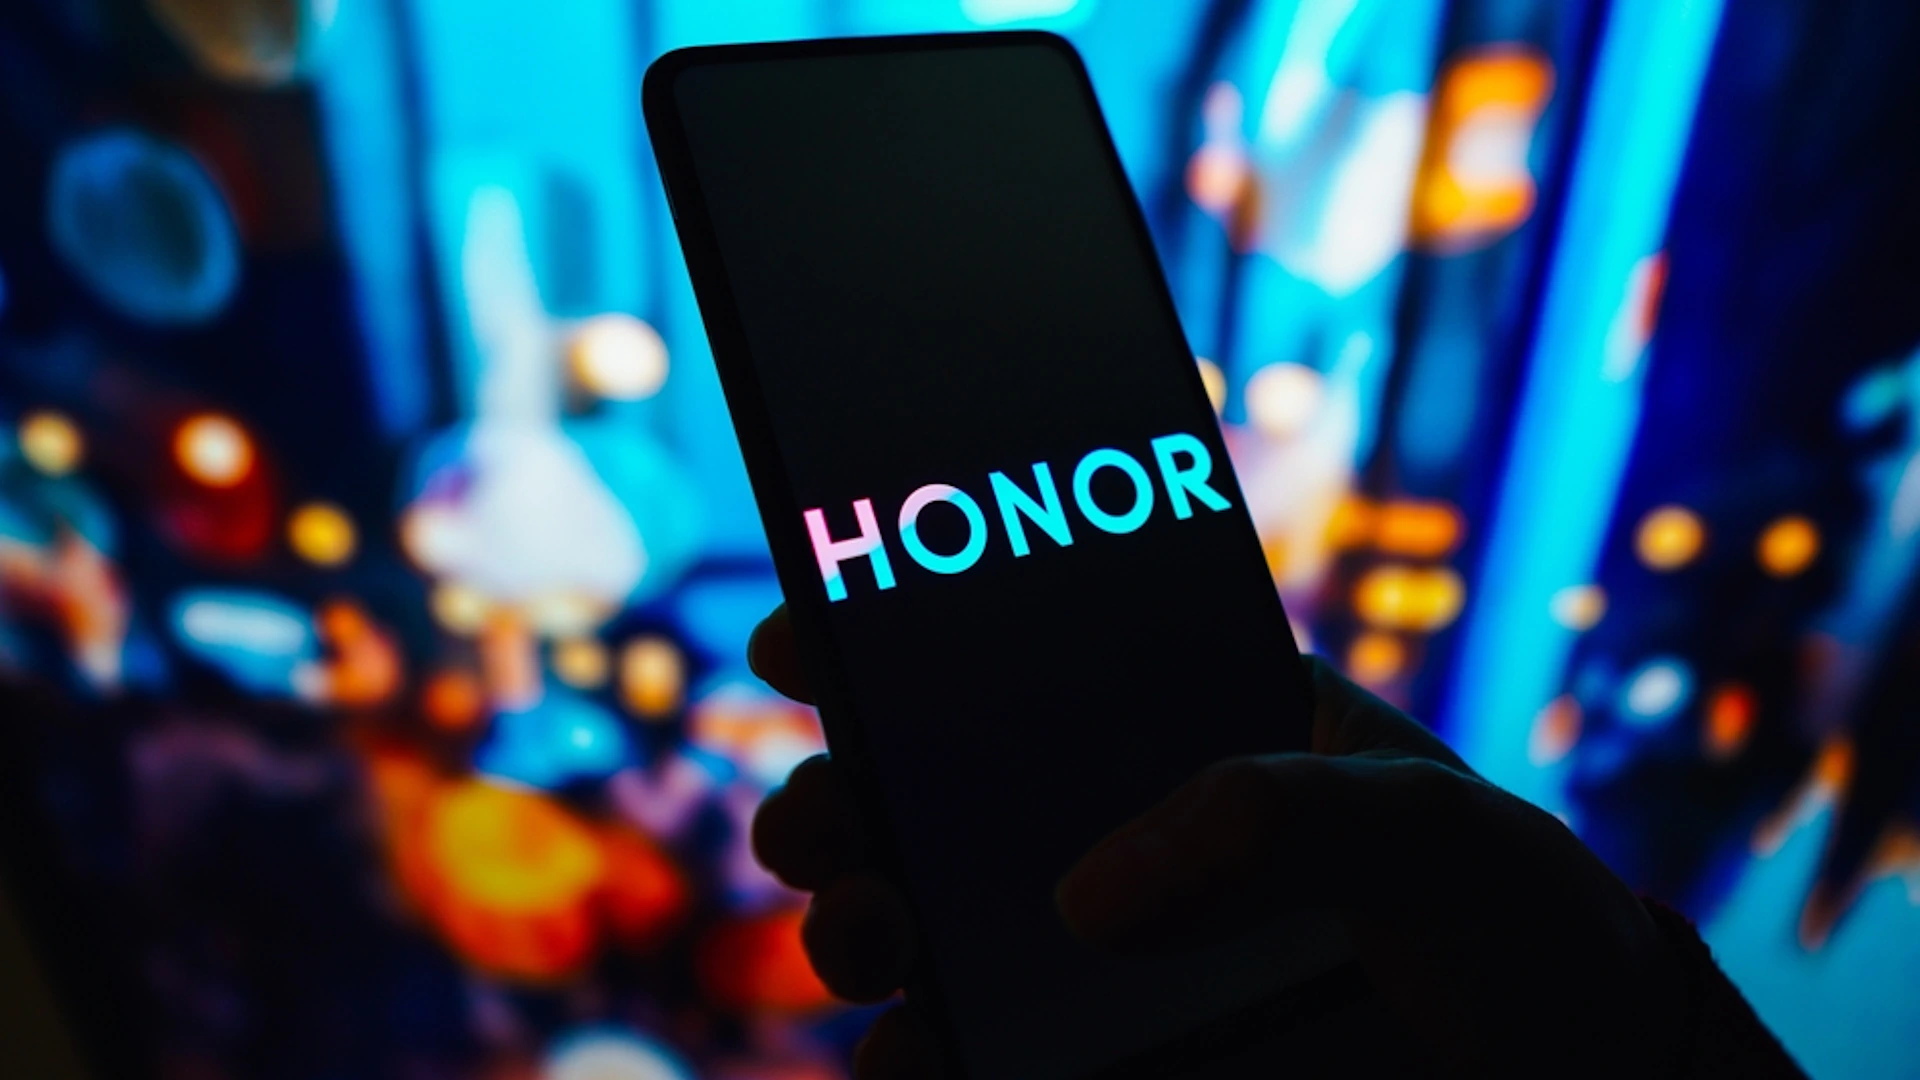 honor-logotip-telefon.webp